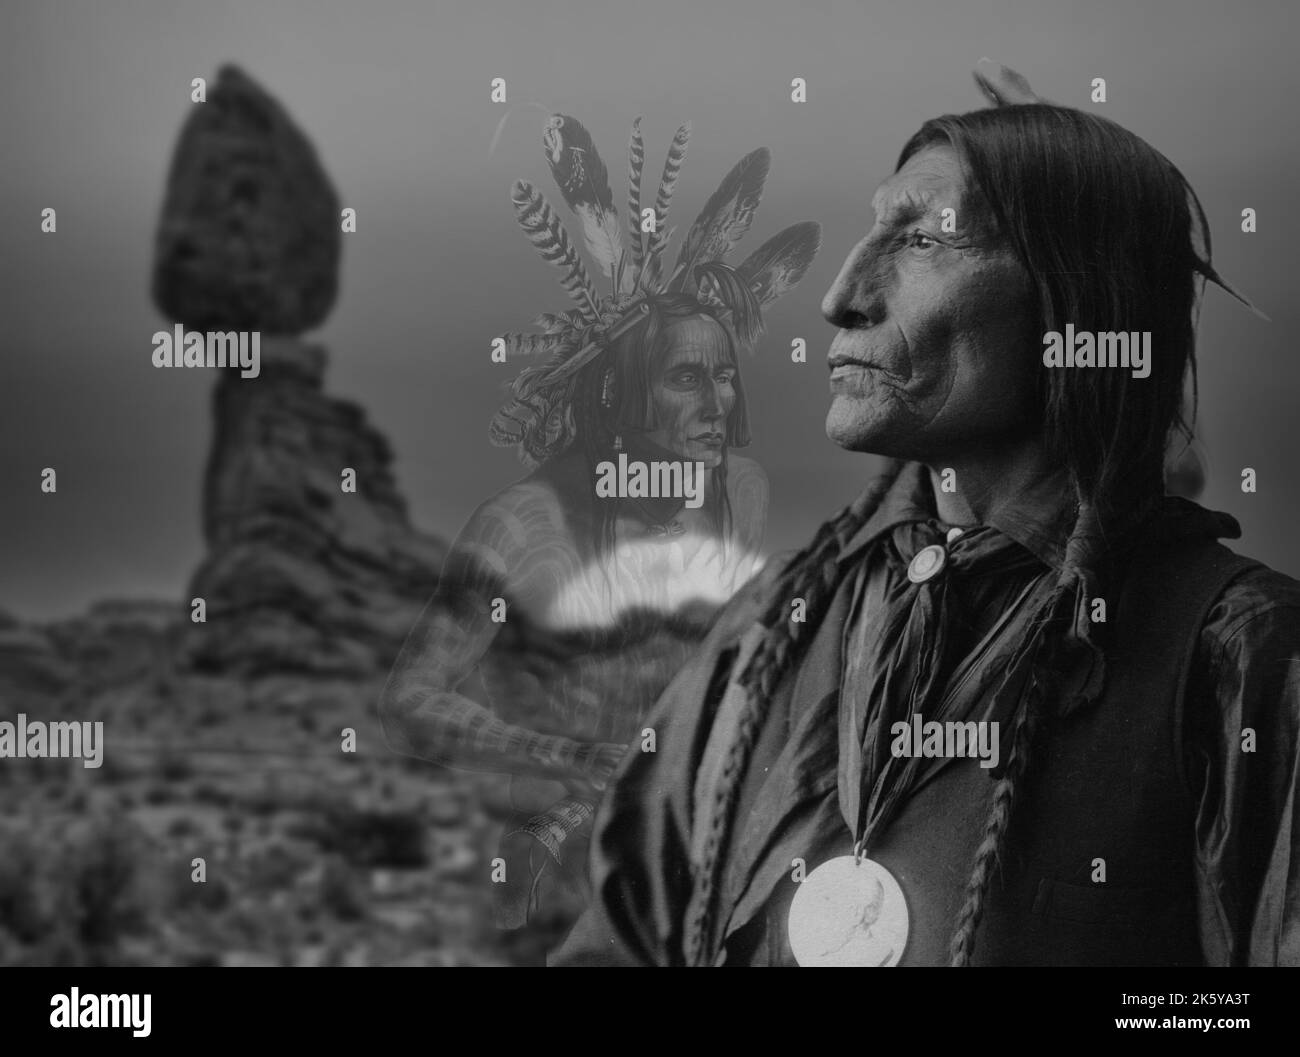 Cultura nativa americana - Cheyenne capo Foto Stock